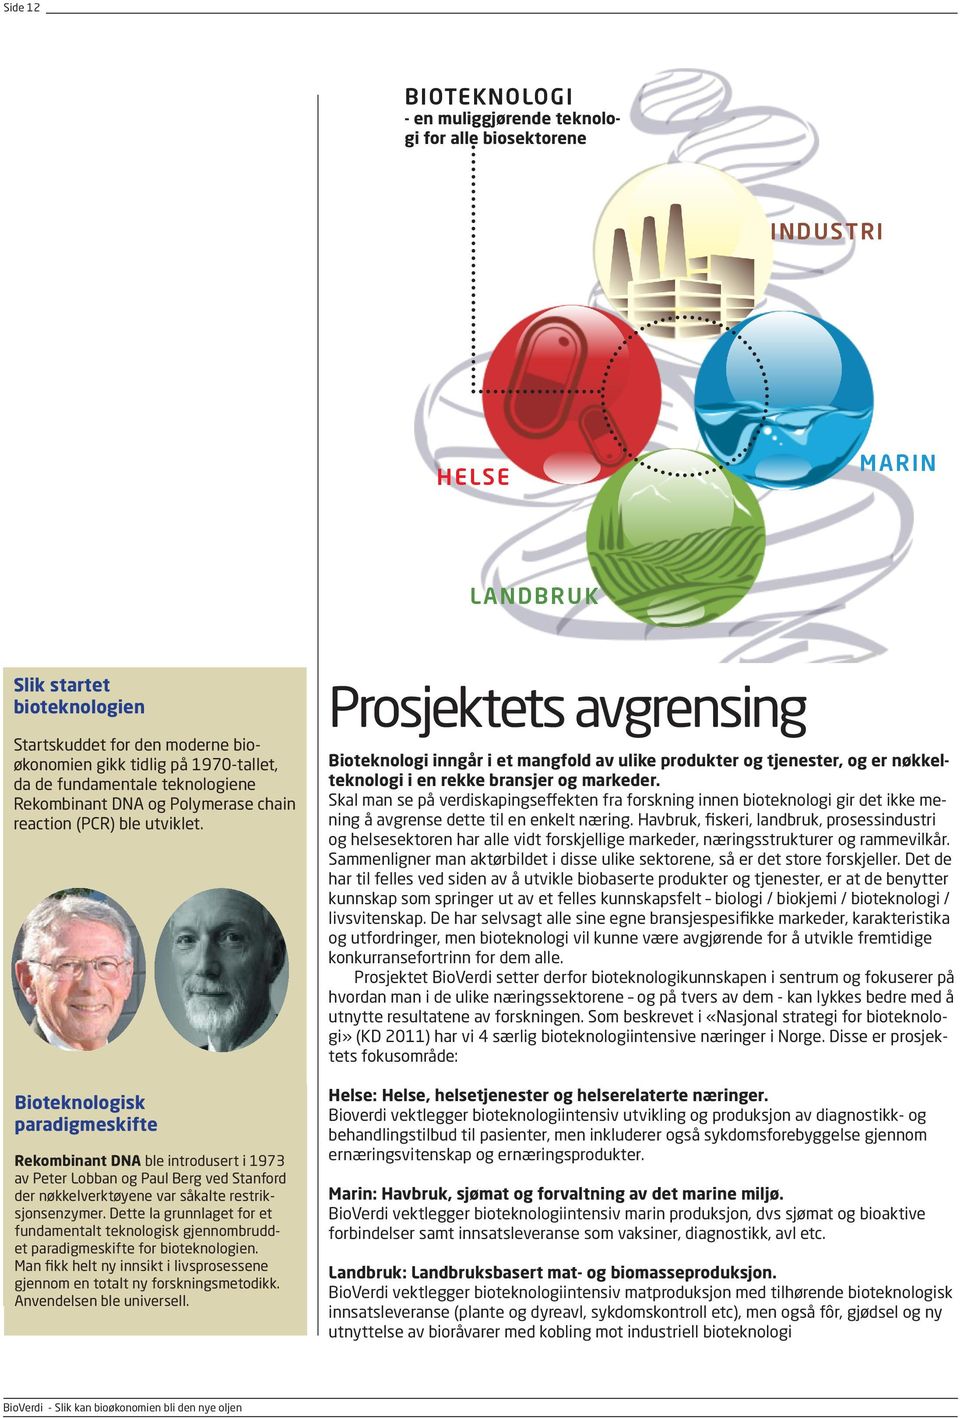 Bioteknologisk paradigmeskifte Rekombinant DNA ble introdusert i 1973 av Peter Lobban og Paul Berg ved Stanford der nøkkelverktøyene var såkalte restriksjonsenzymer.